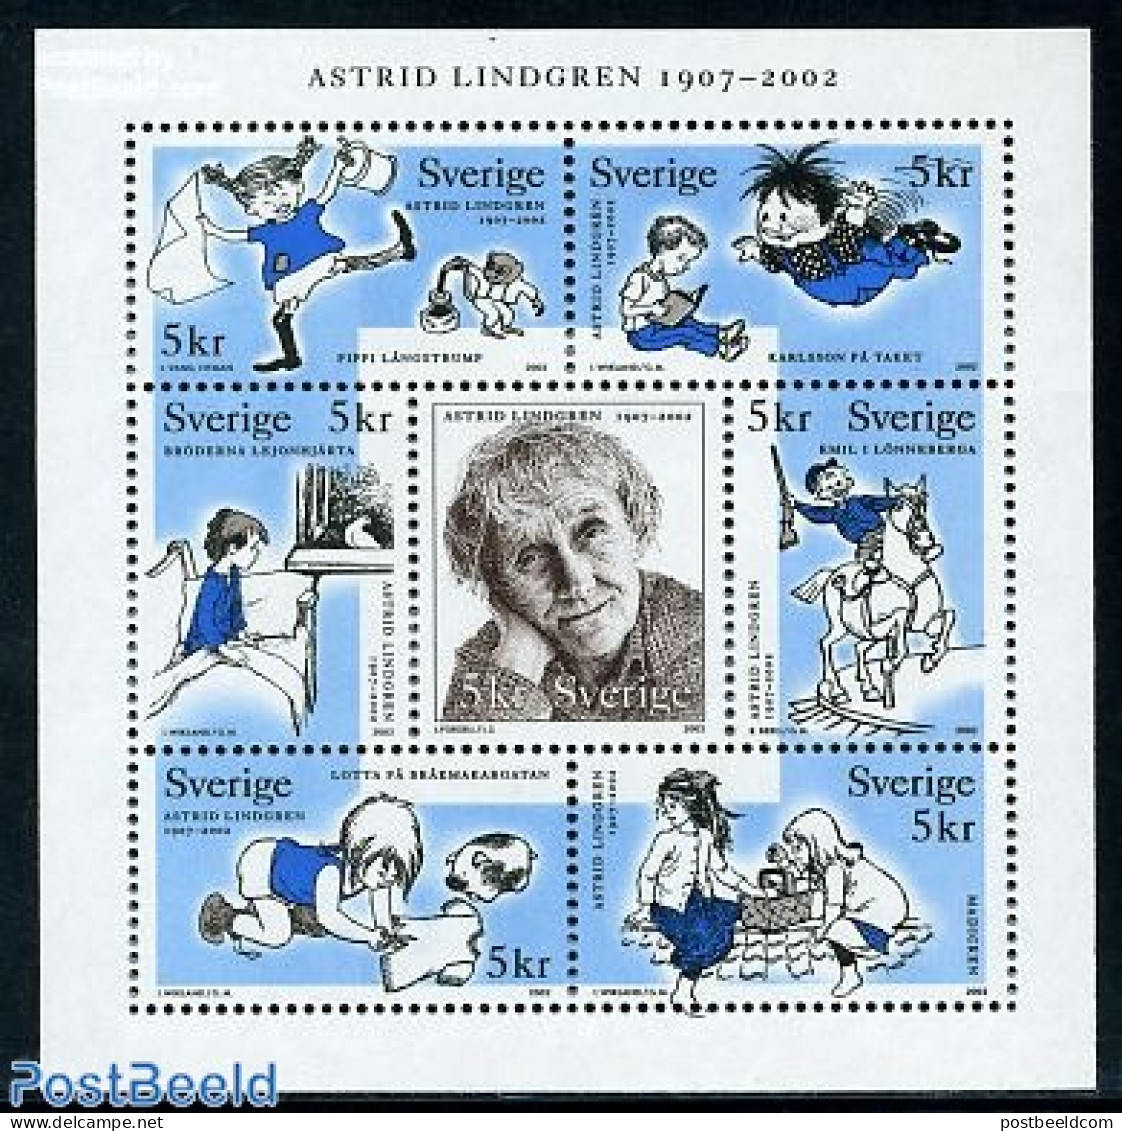 Sweden 2002 Astrid Lindgren 7v M/s, Mint NH, Art - Children's Books Illustrations - Neufs